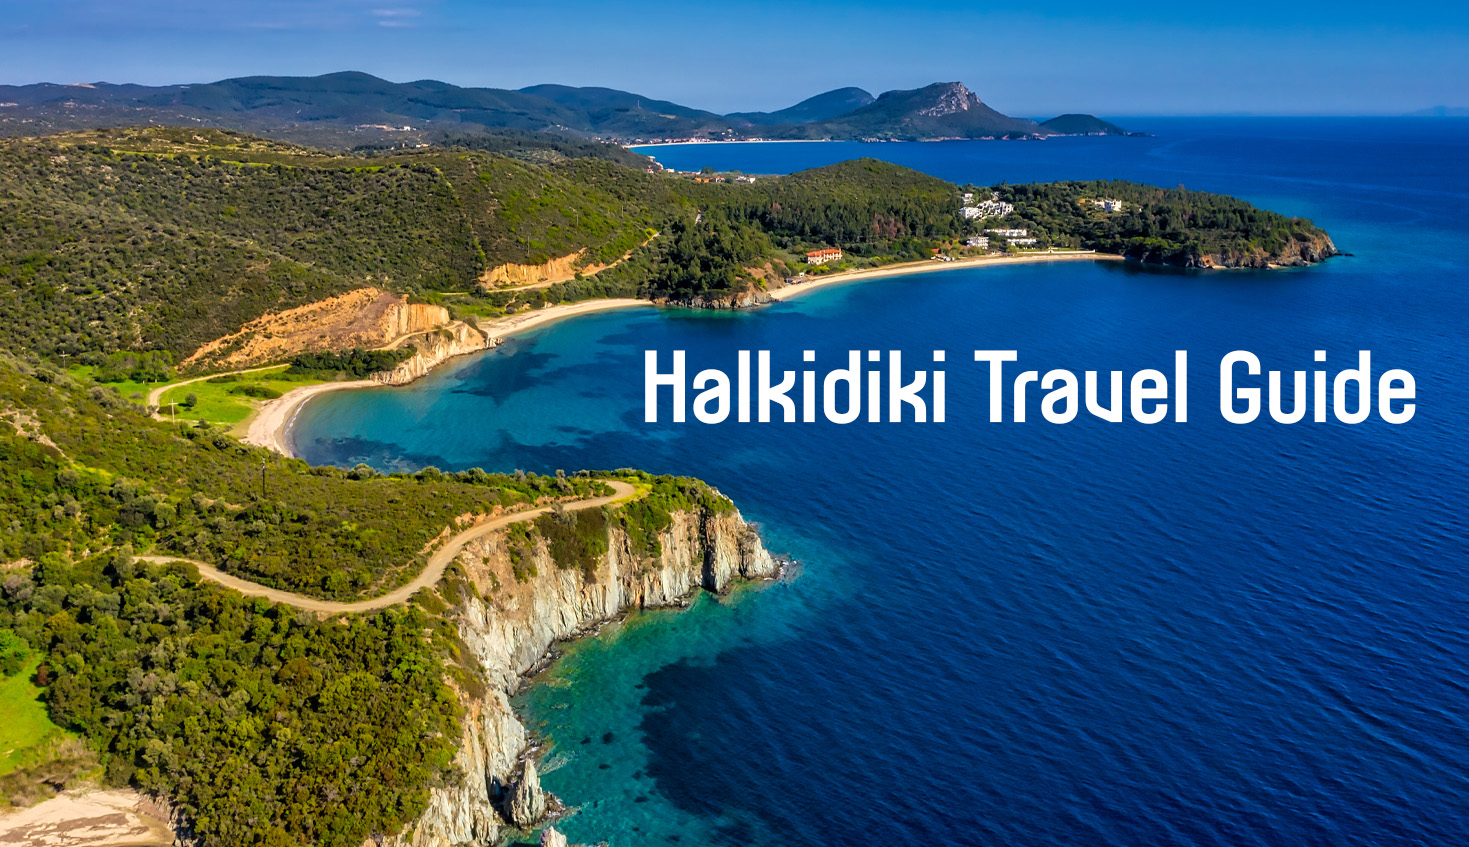 Halkidiki Travel Guide